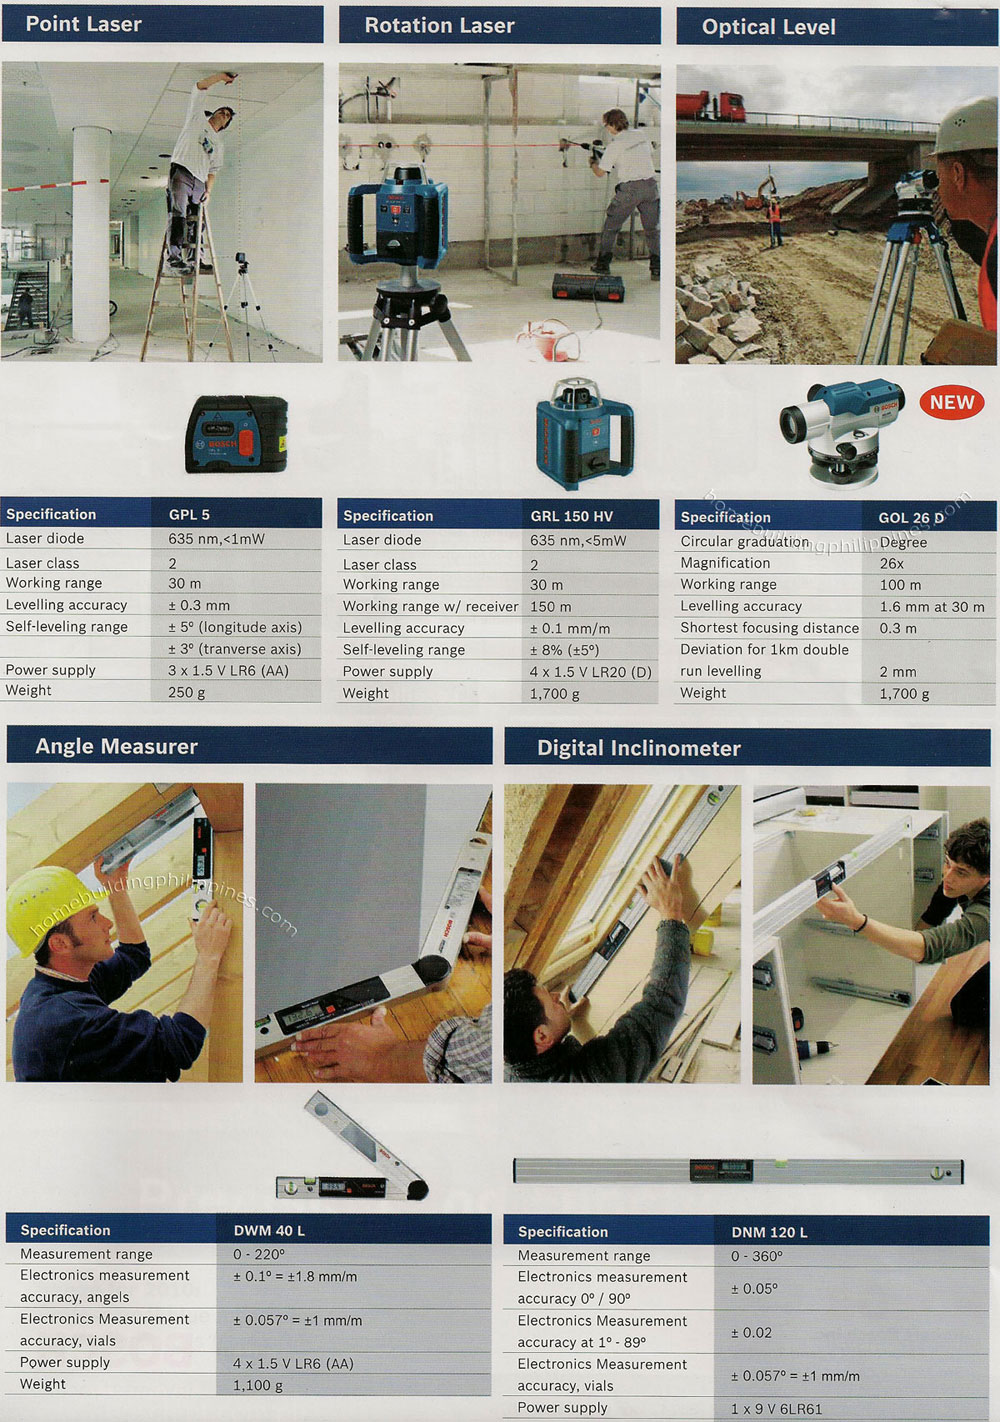 Point Laser, Rotation Laser, Optical Level, Angle Measurer, Digital Inclinometer